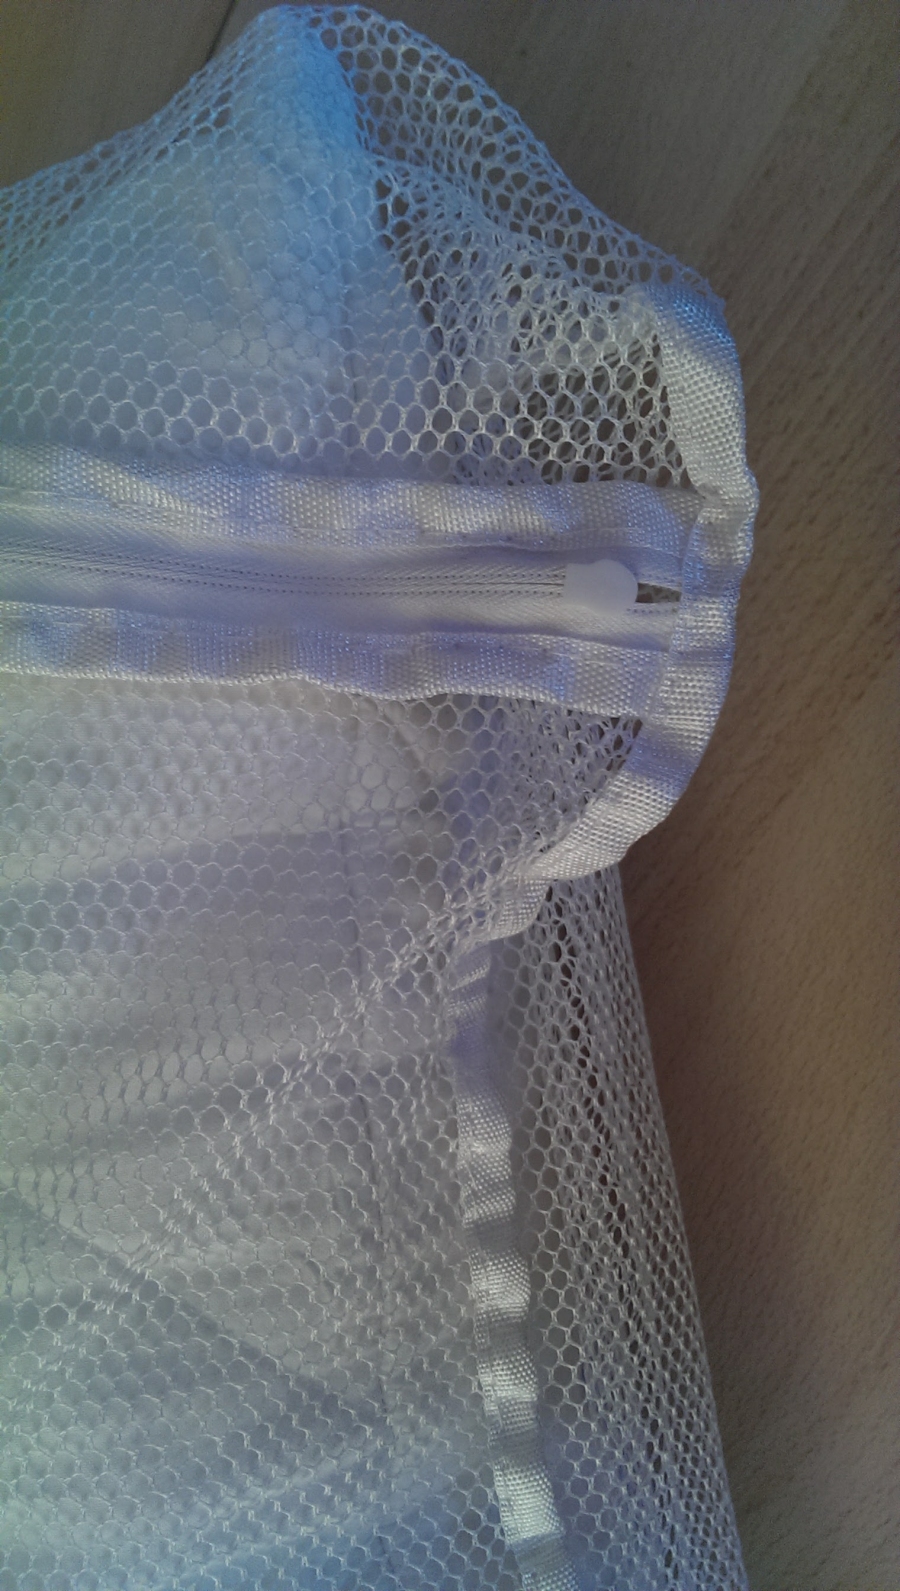 Klackern oder Hängenbleiben an Textilien des Reißverschlusses vom Wäschenetz in der Waschmaschine vermeiden.